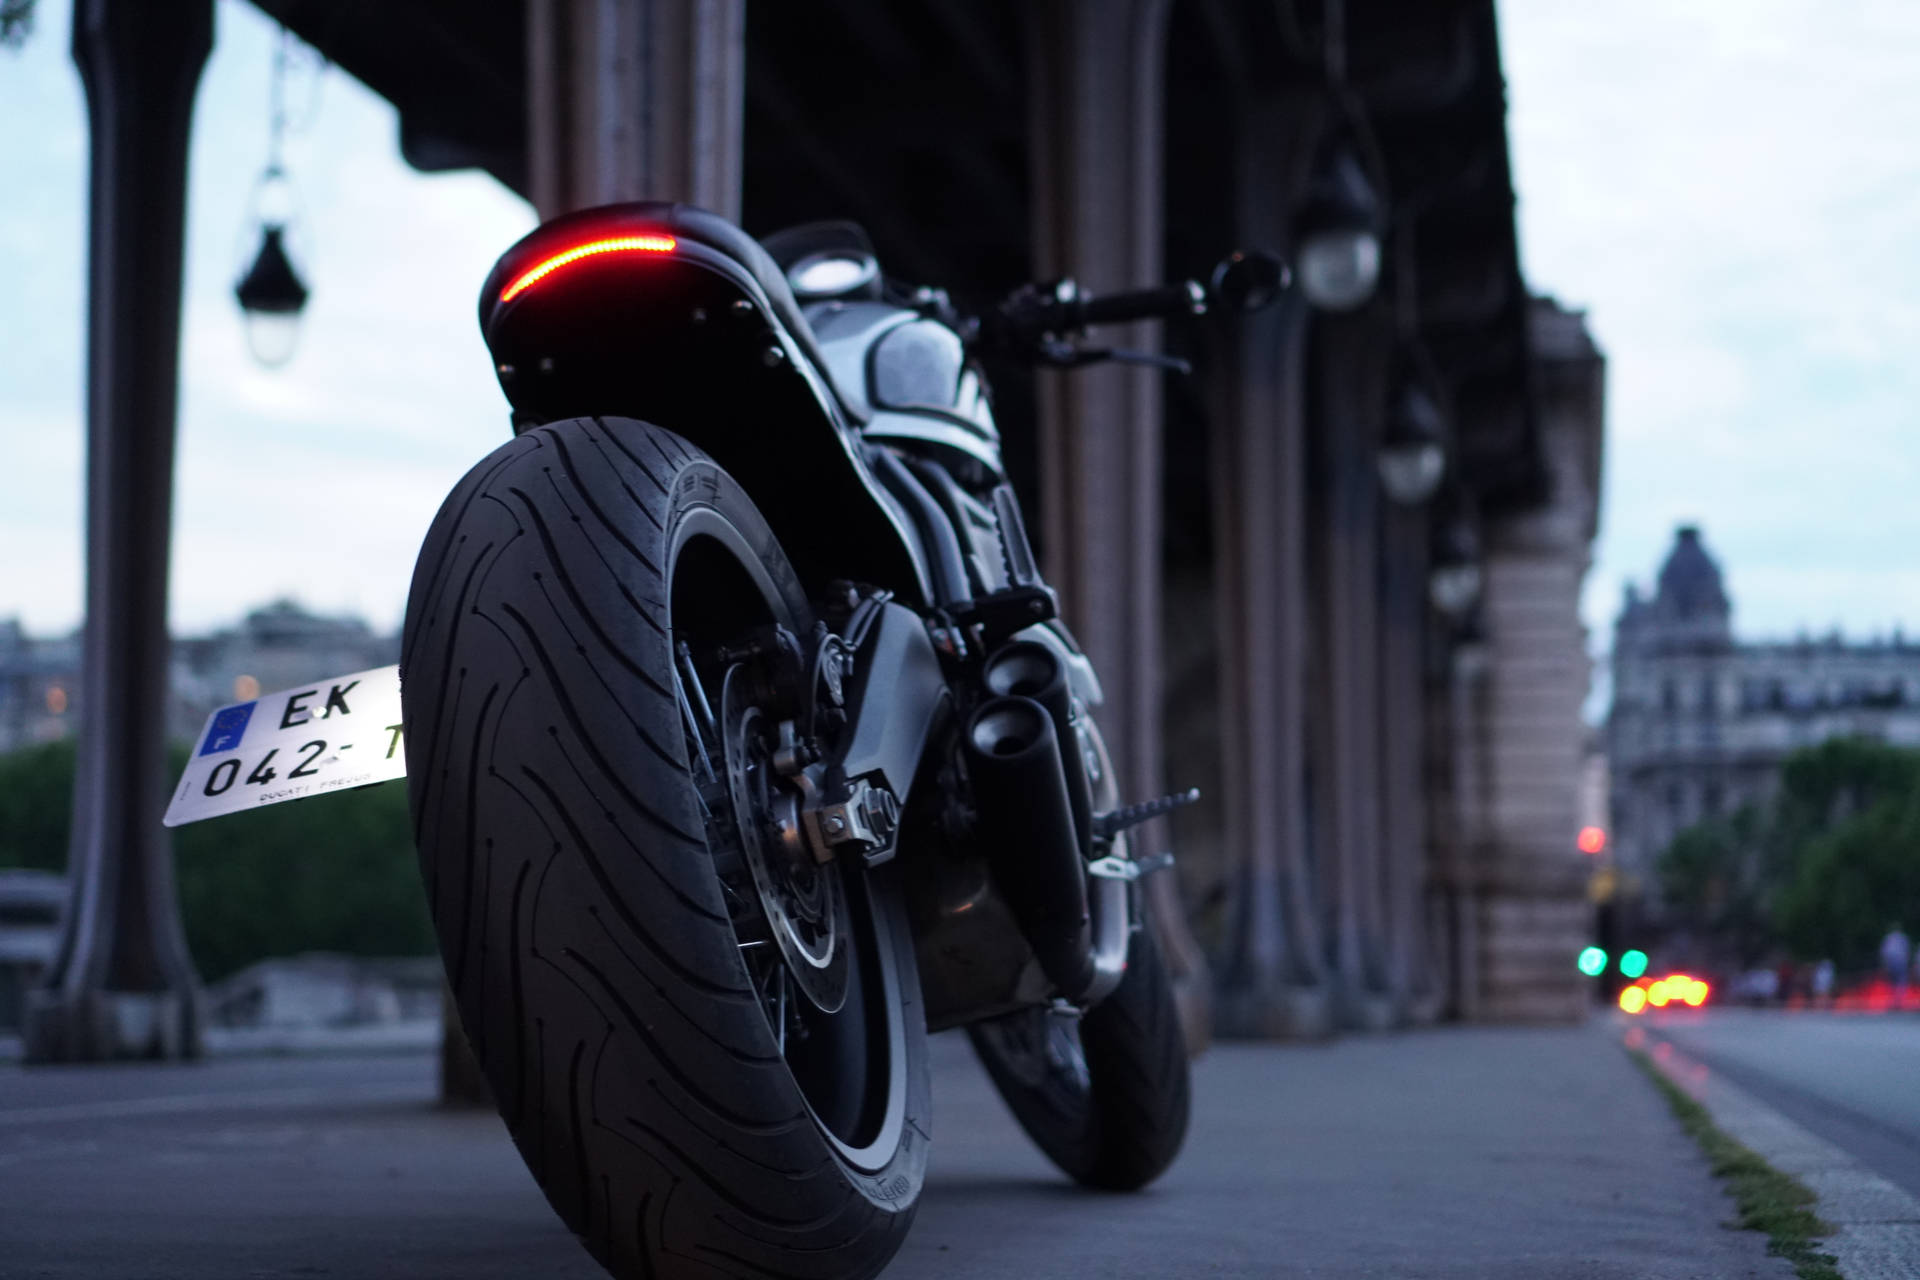 Black Ducati In The City